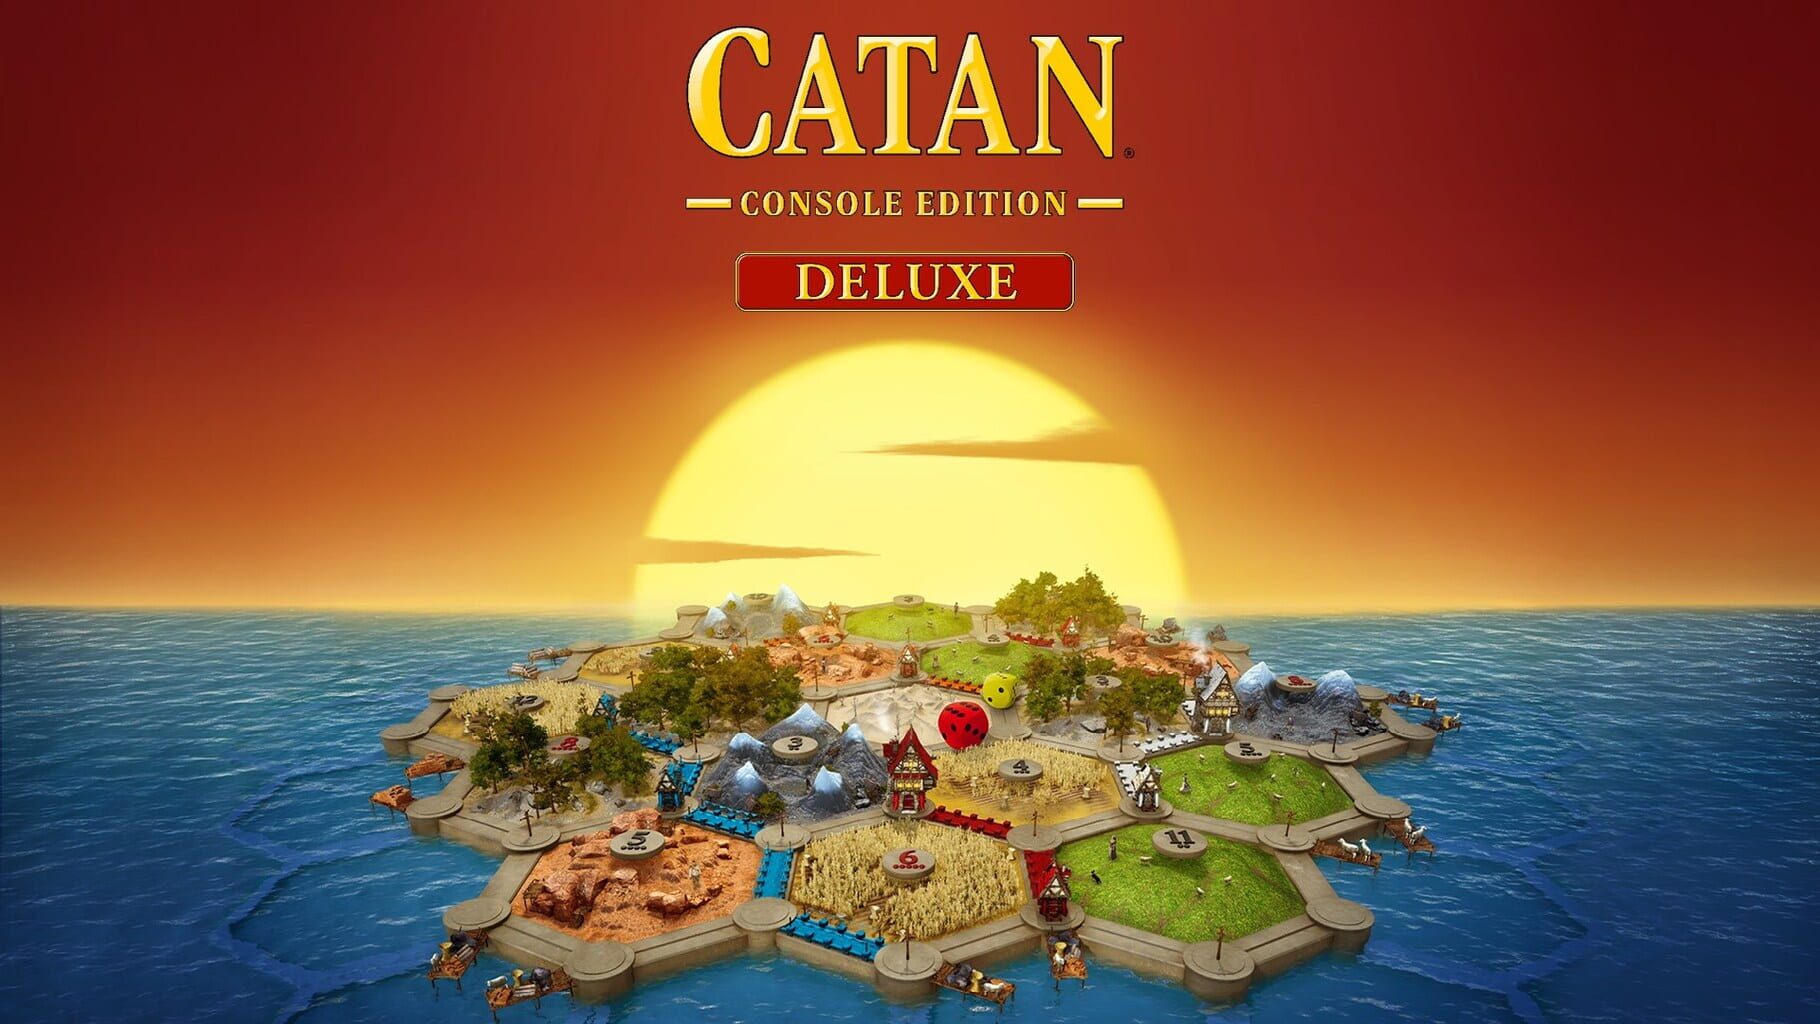 Catan: Console Edition Deluxe artwork